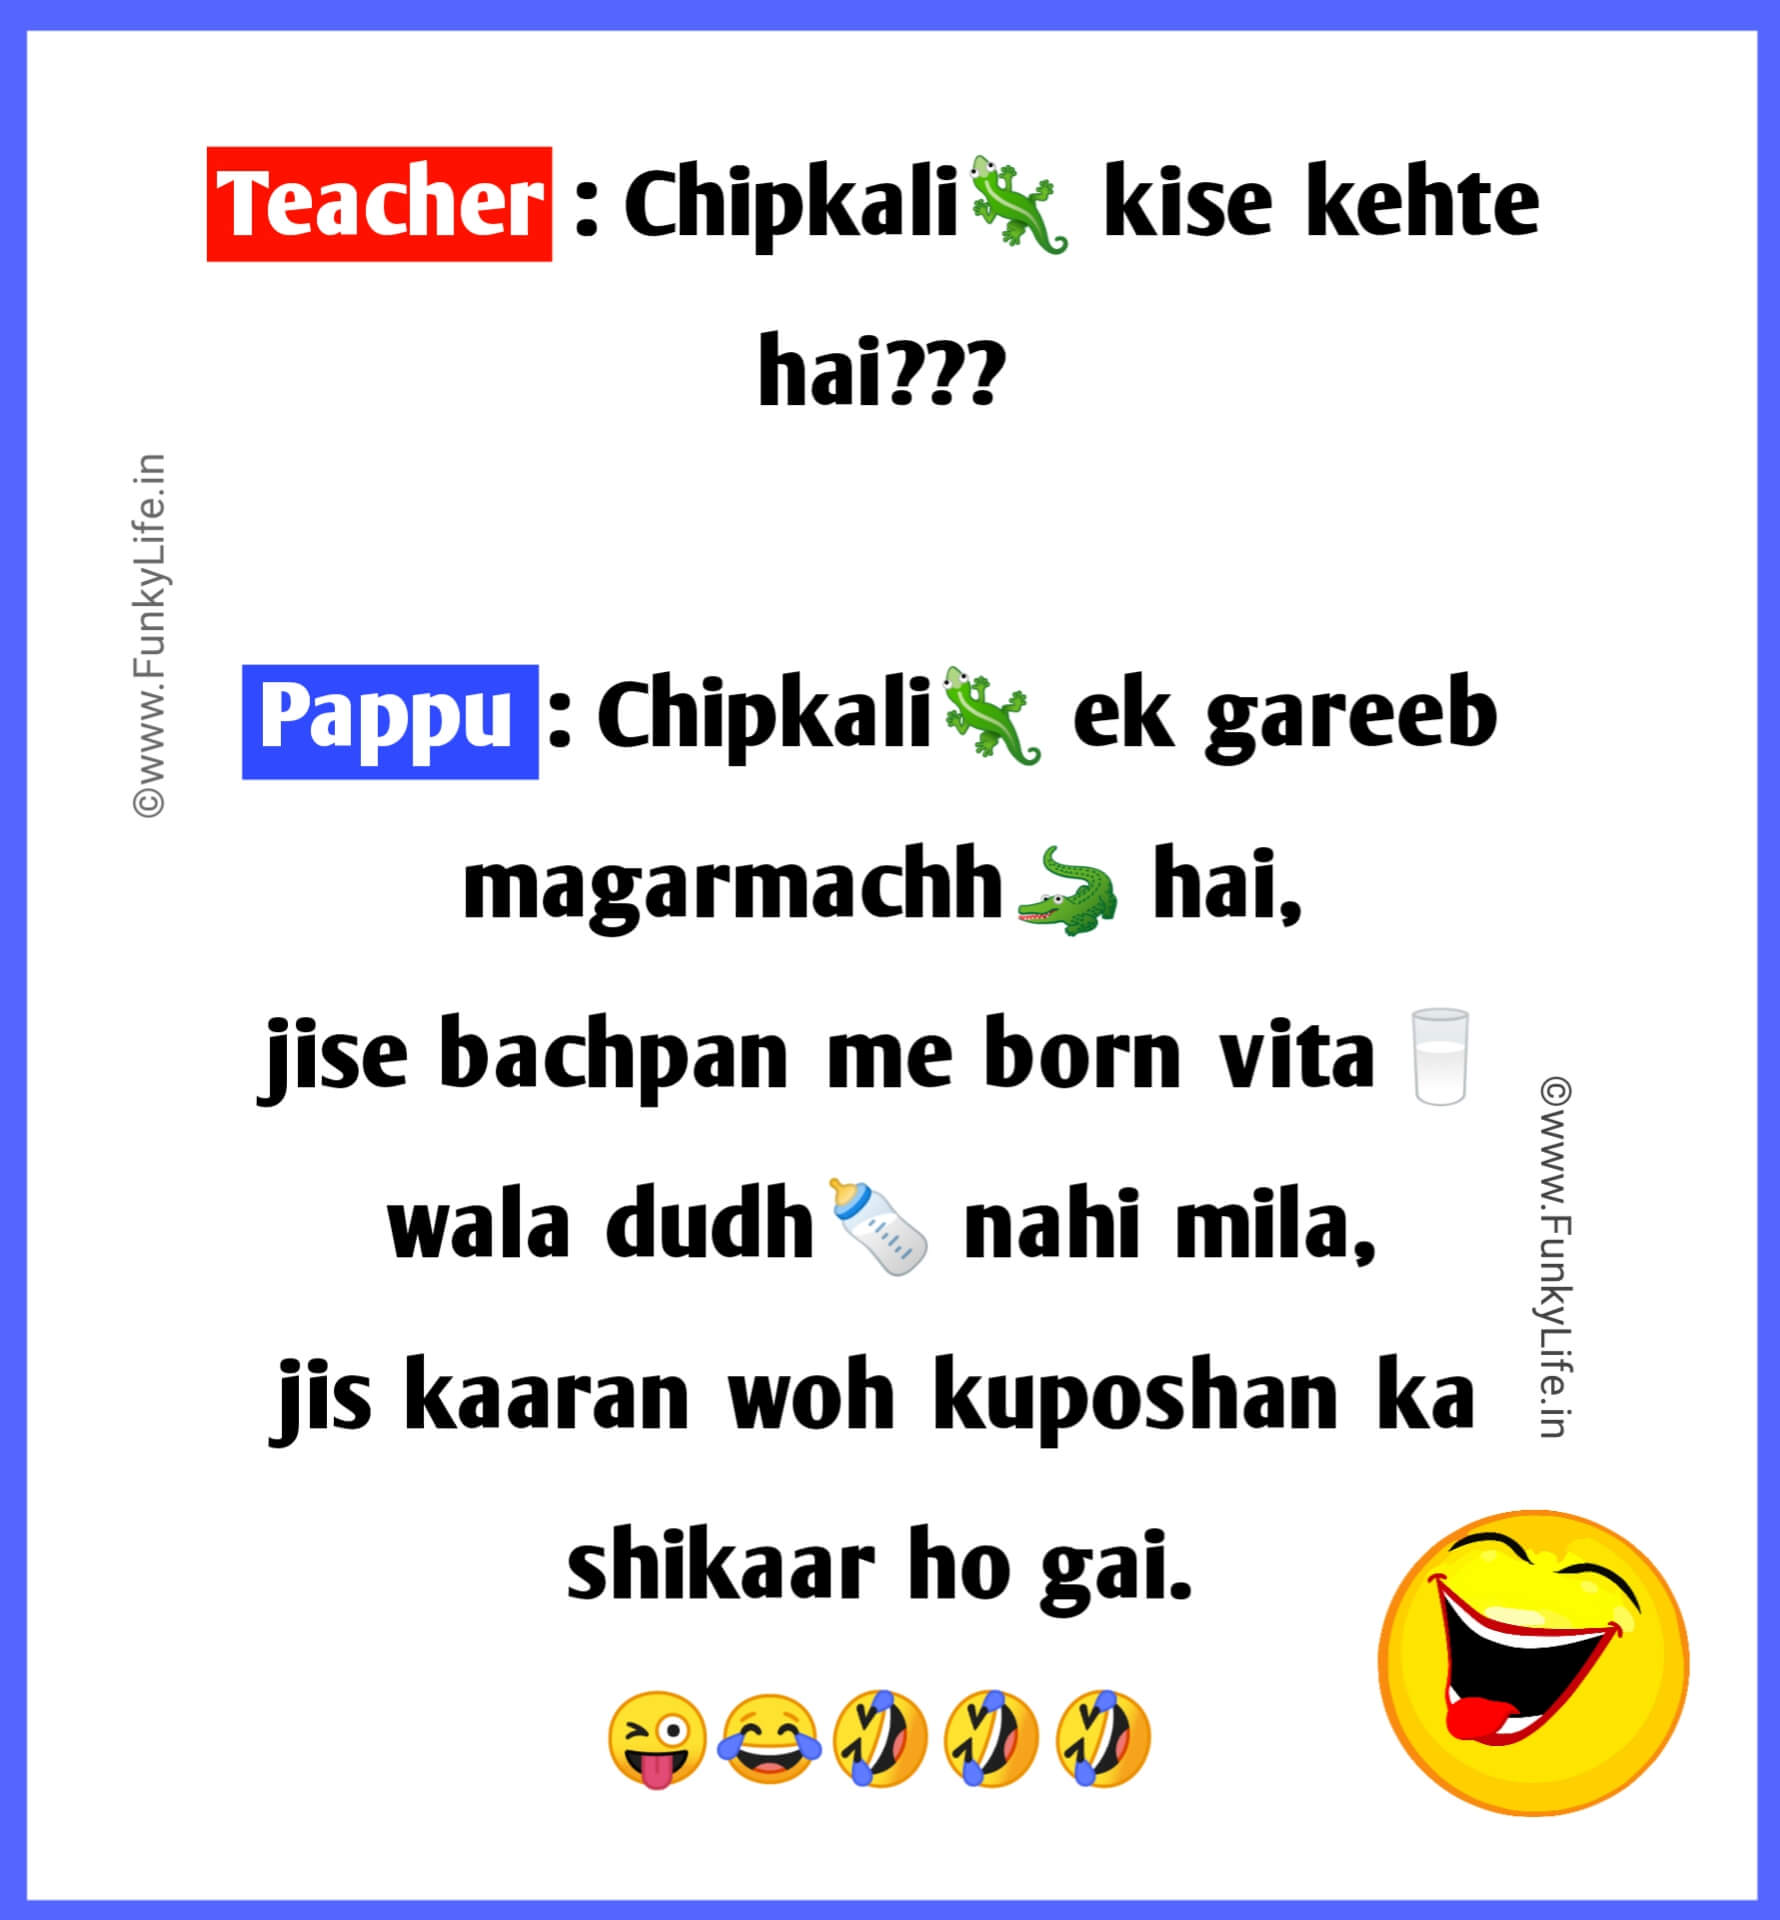 Teacher Student Jokes in Hindi